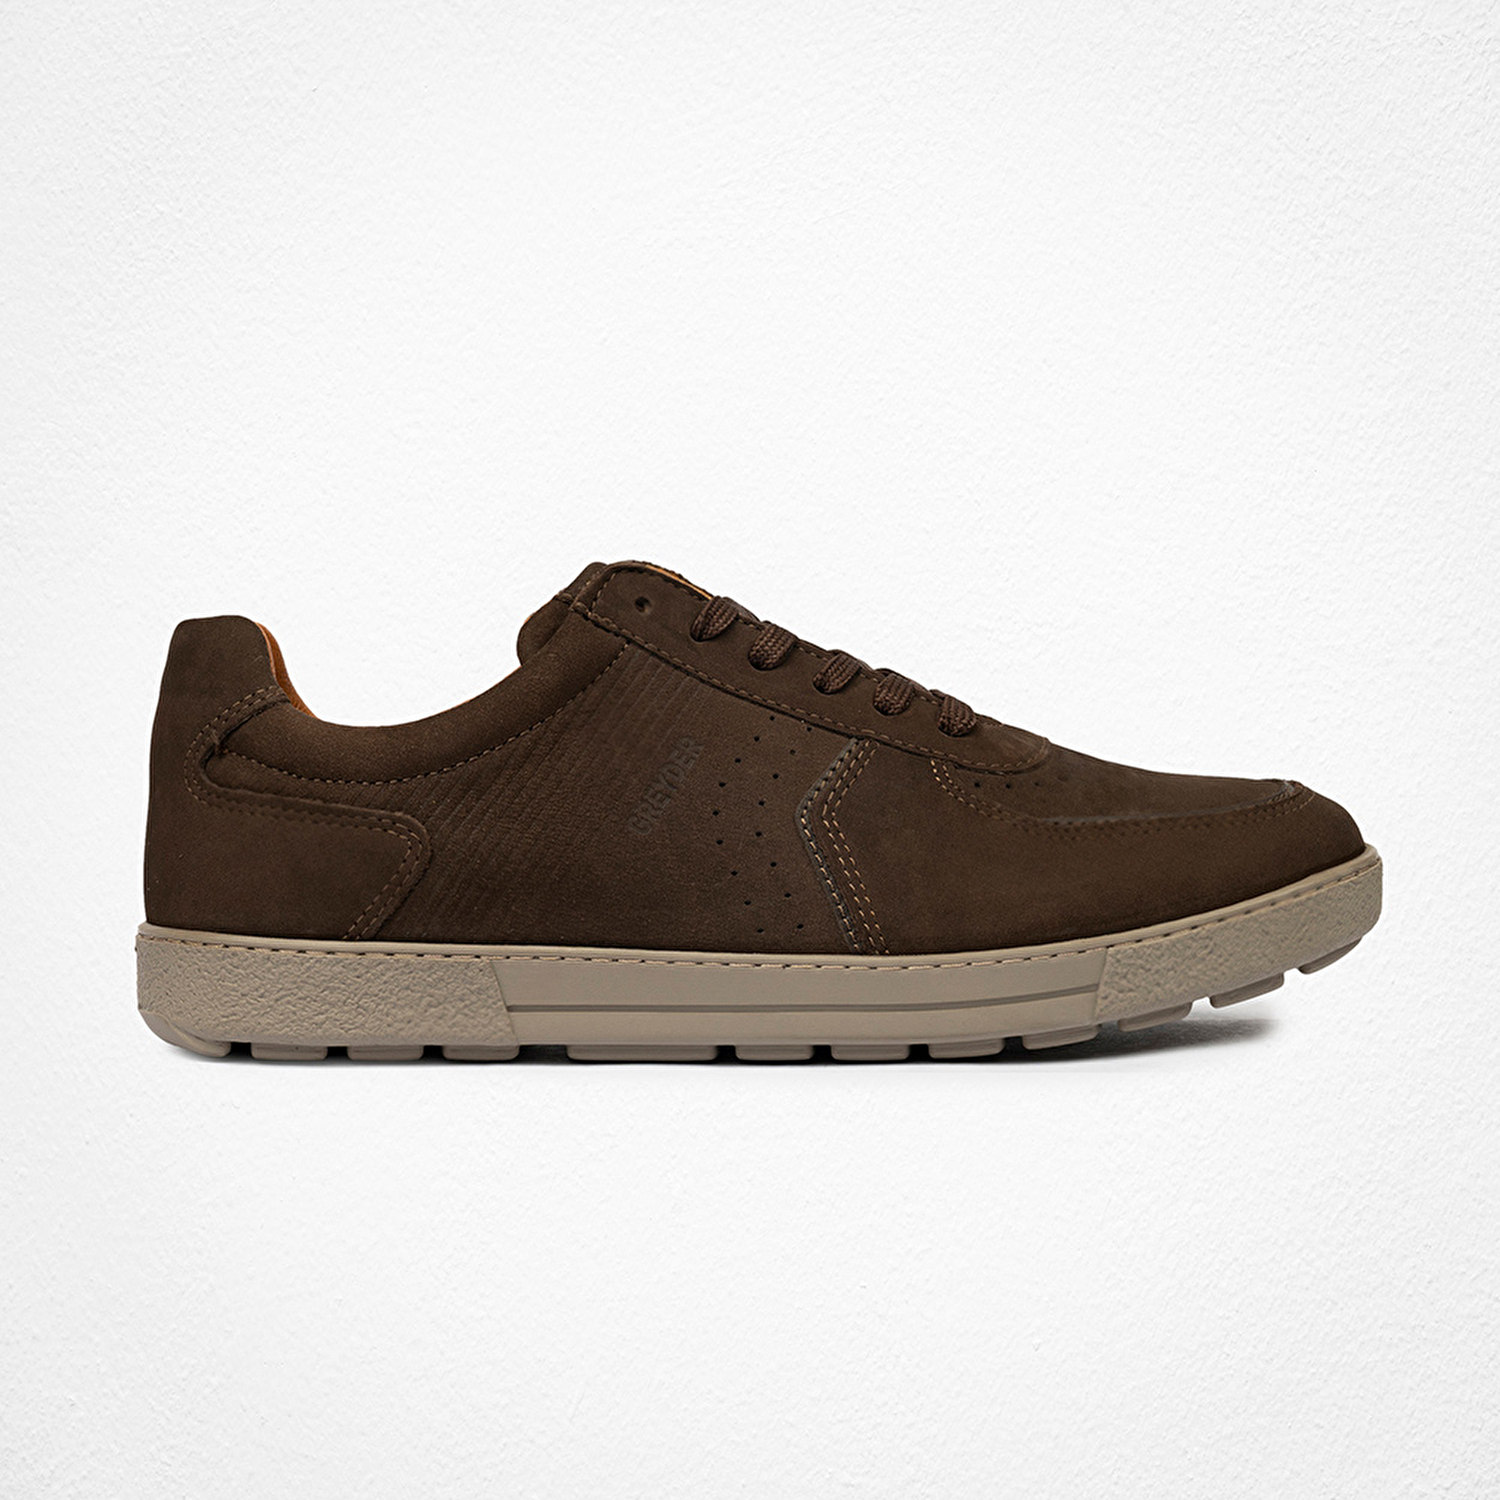 Erkek Kahverengi Hakiki Deri Sneaker Ayakkabı 4Y1HA00124-2